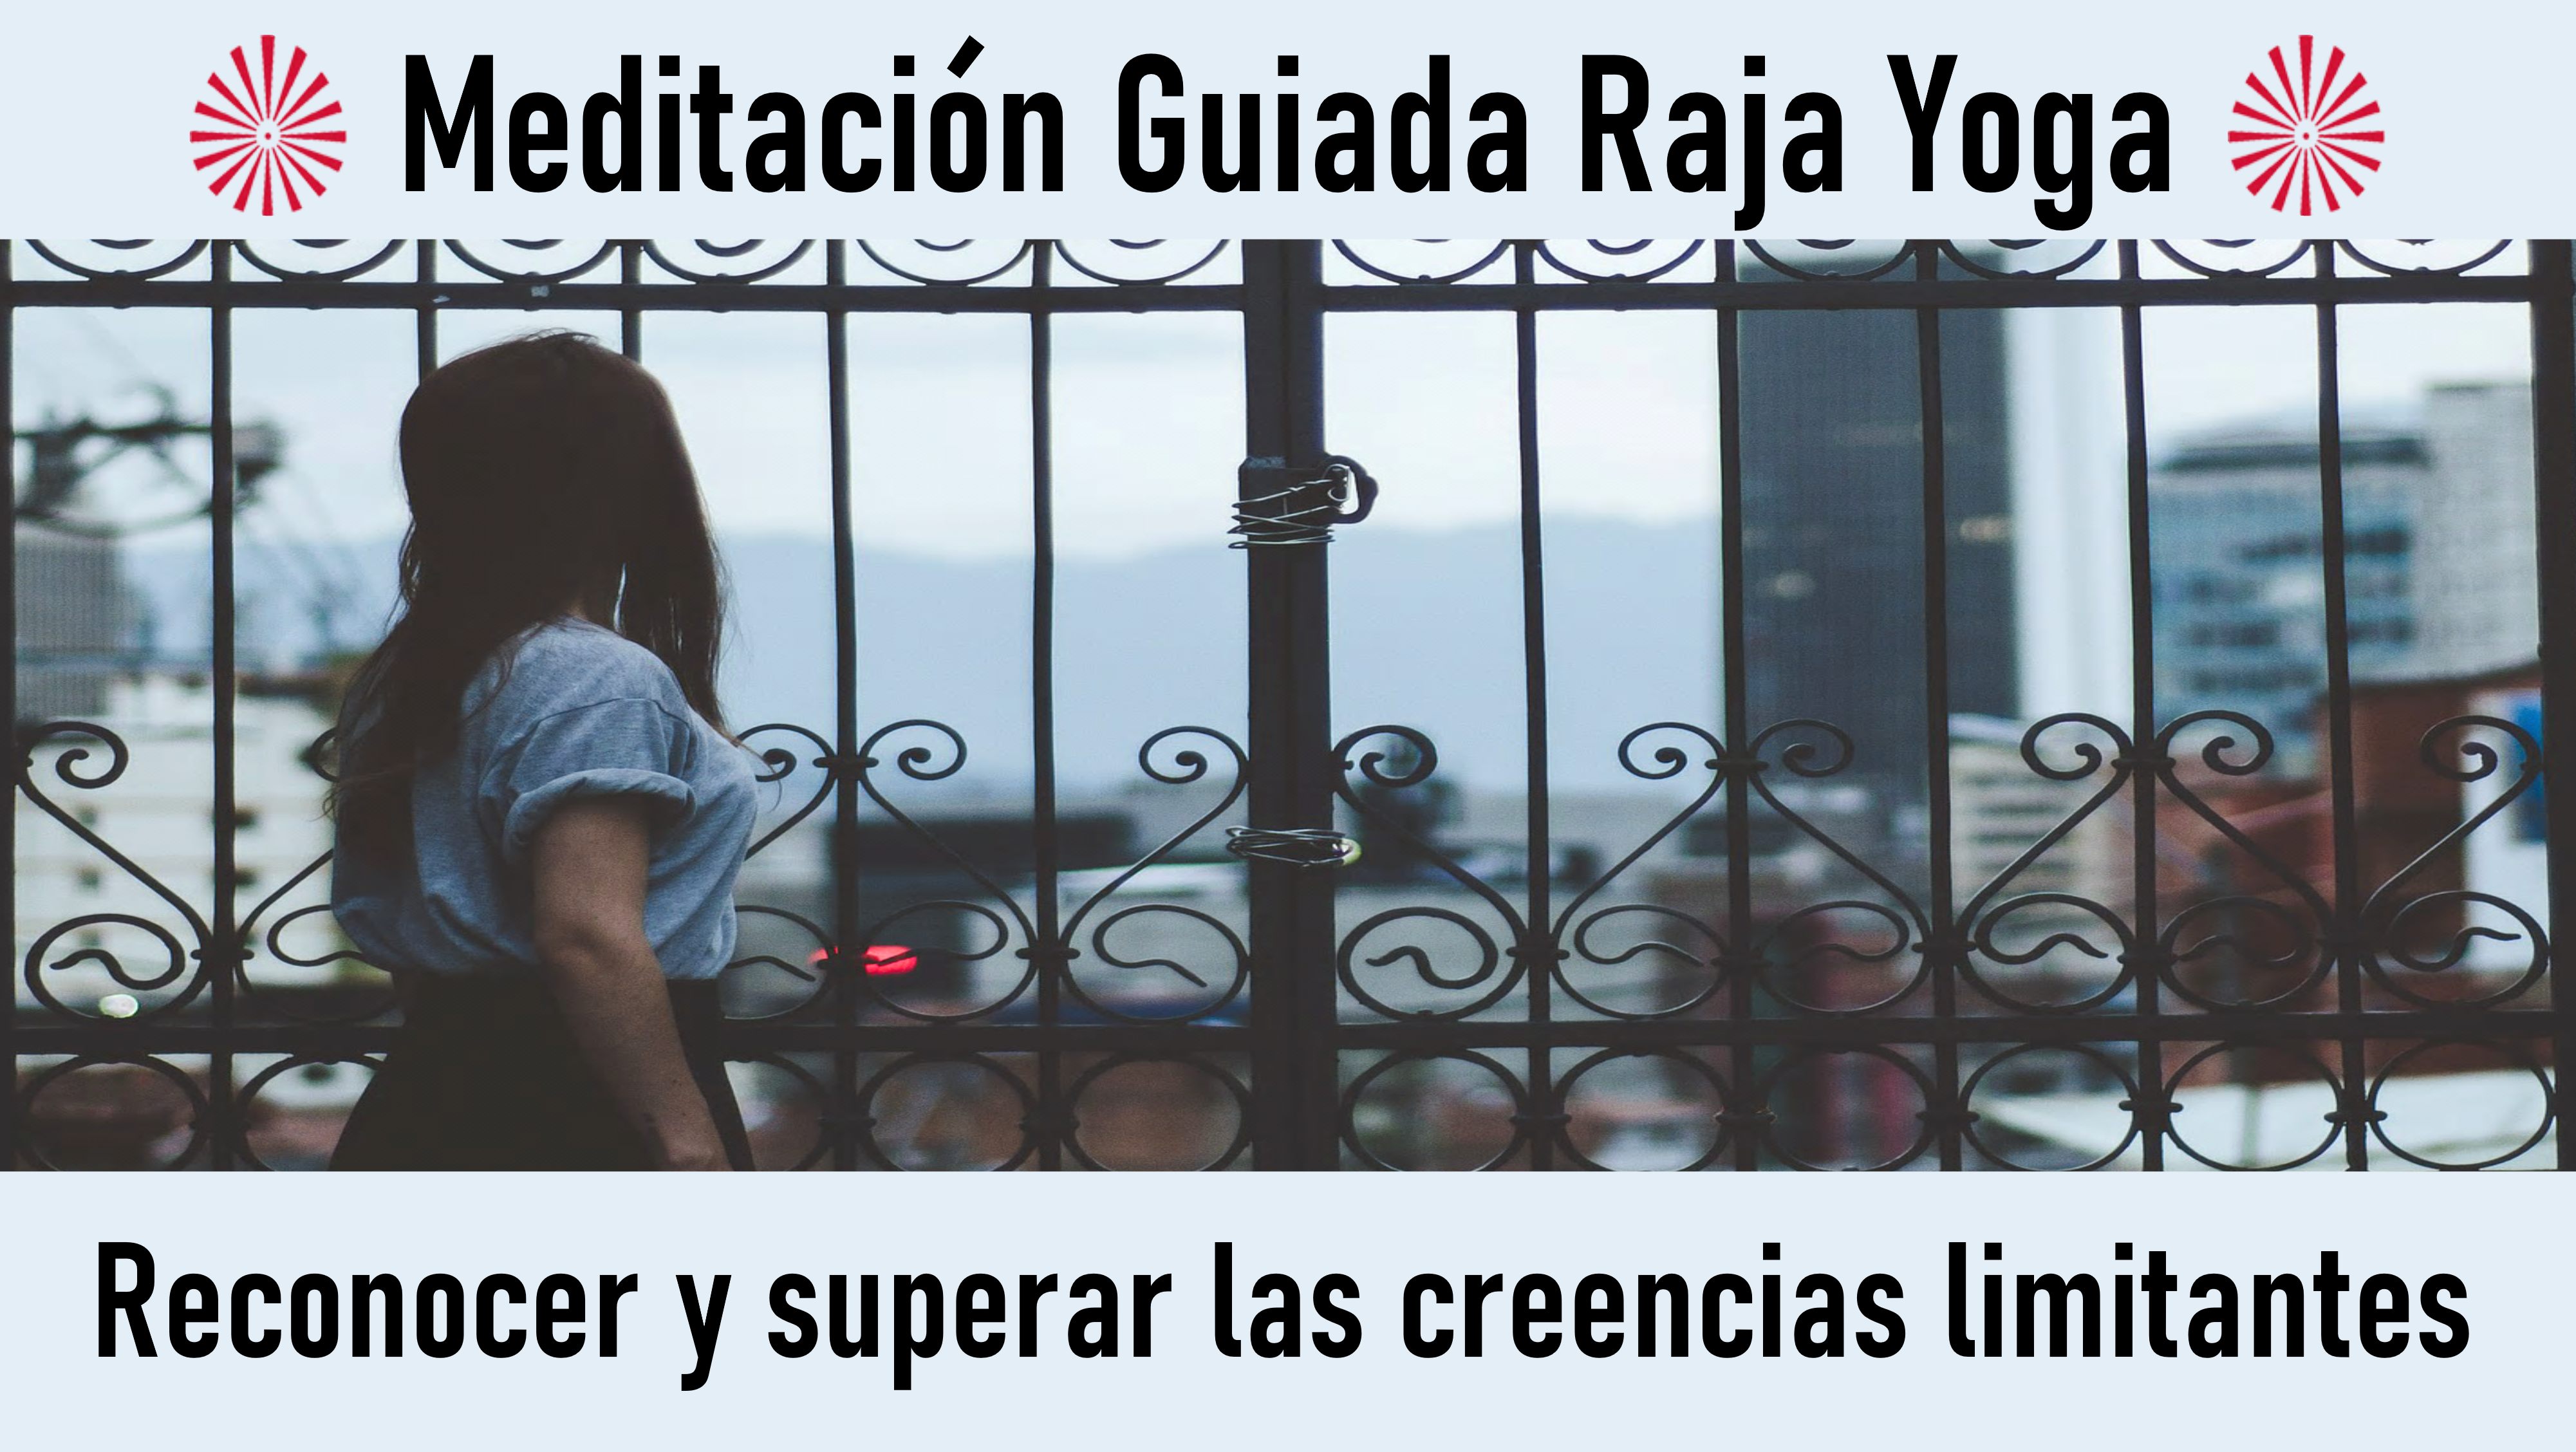 Meditacion Raja Yoga: Reconocer y superar las creencias limitantes (11 Agosto 2020) On-line desde Mallorca